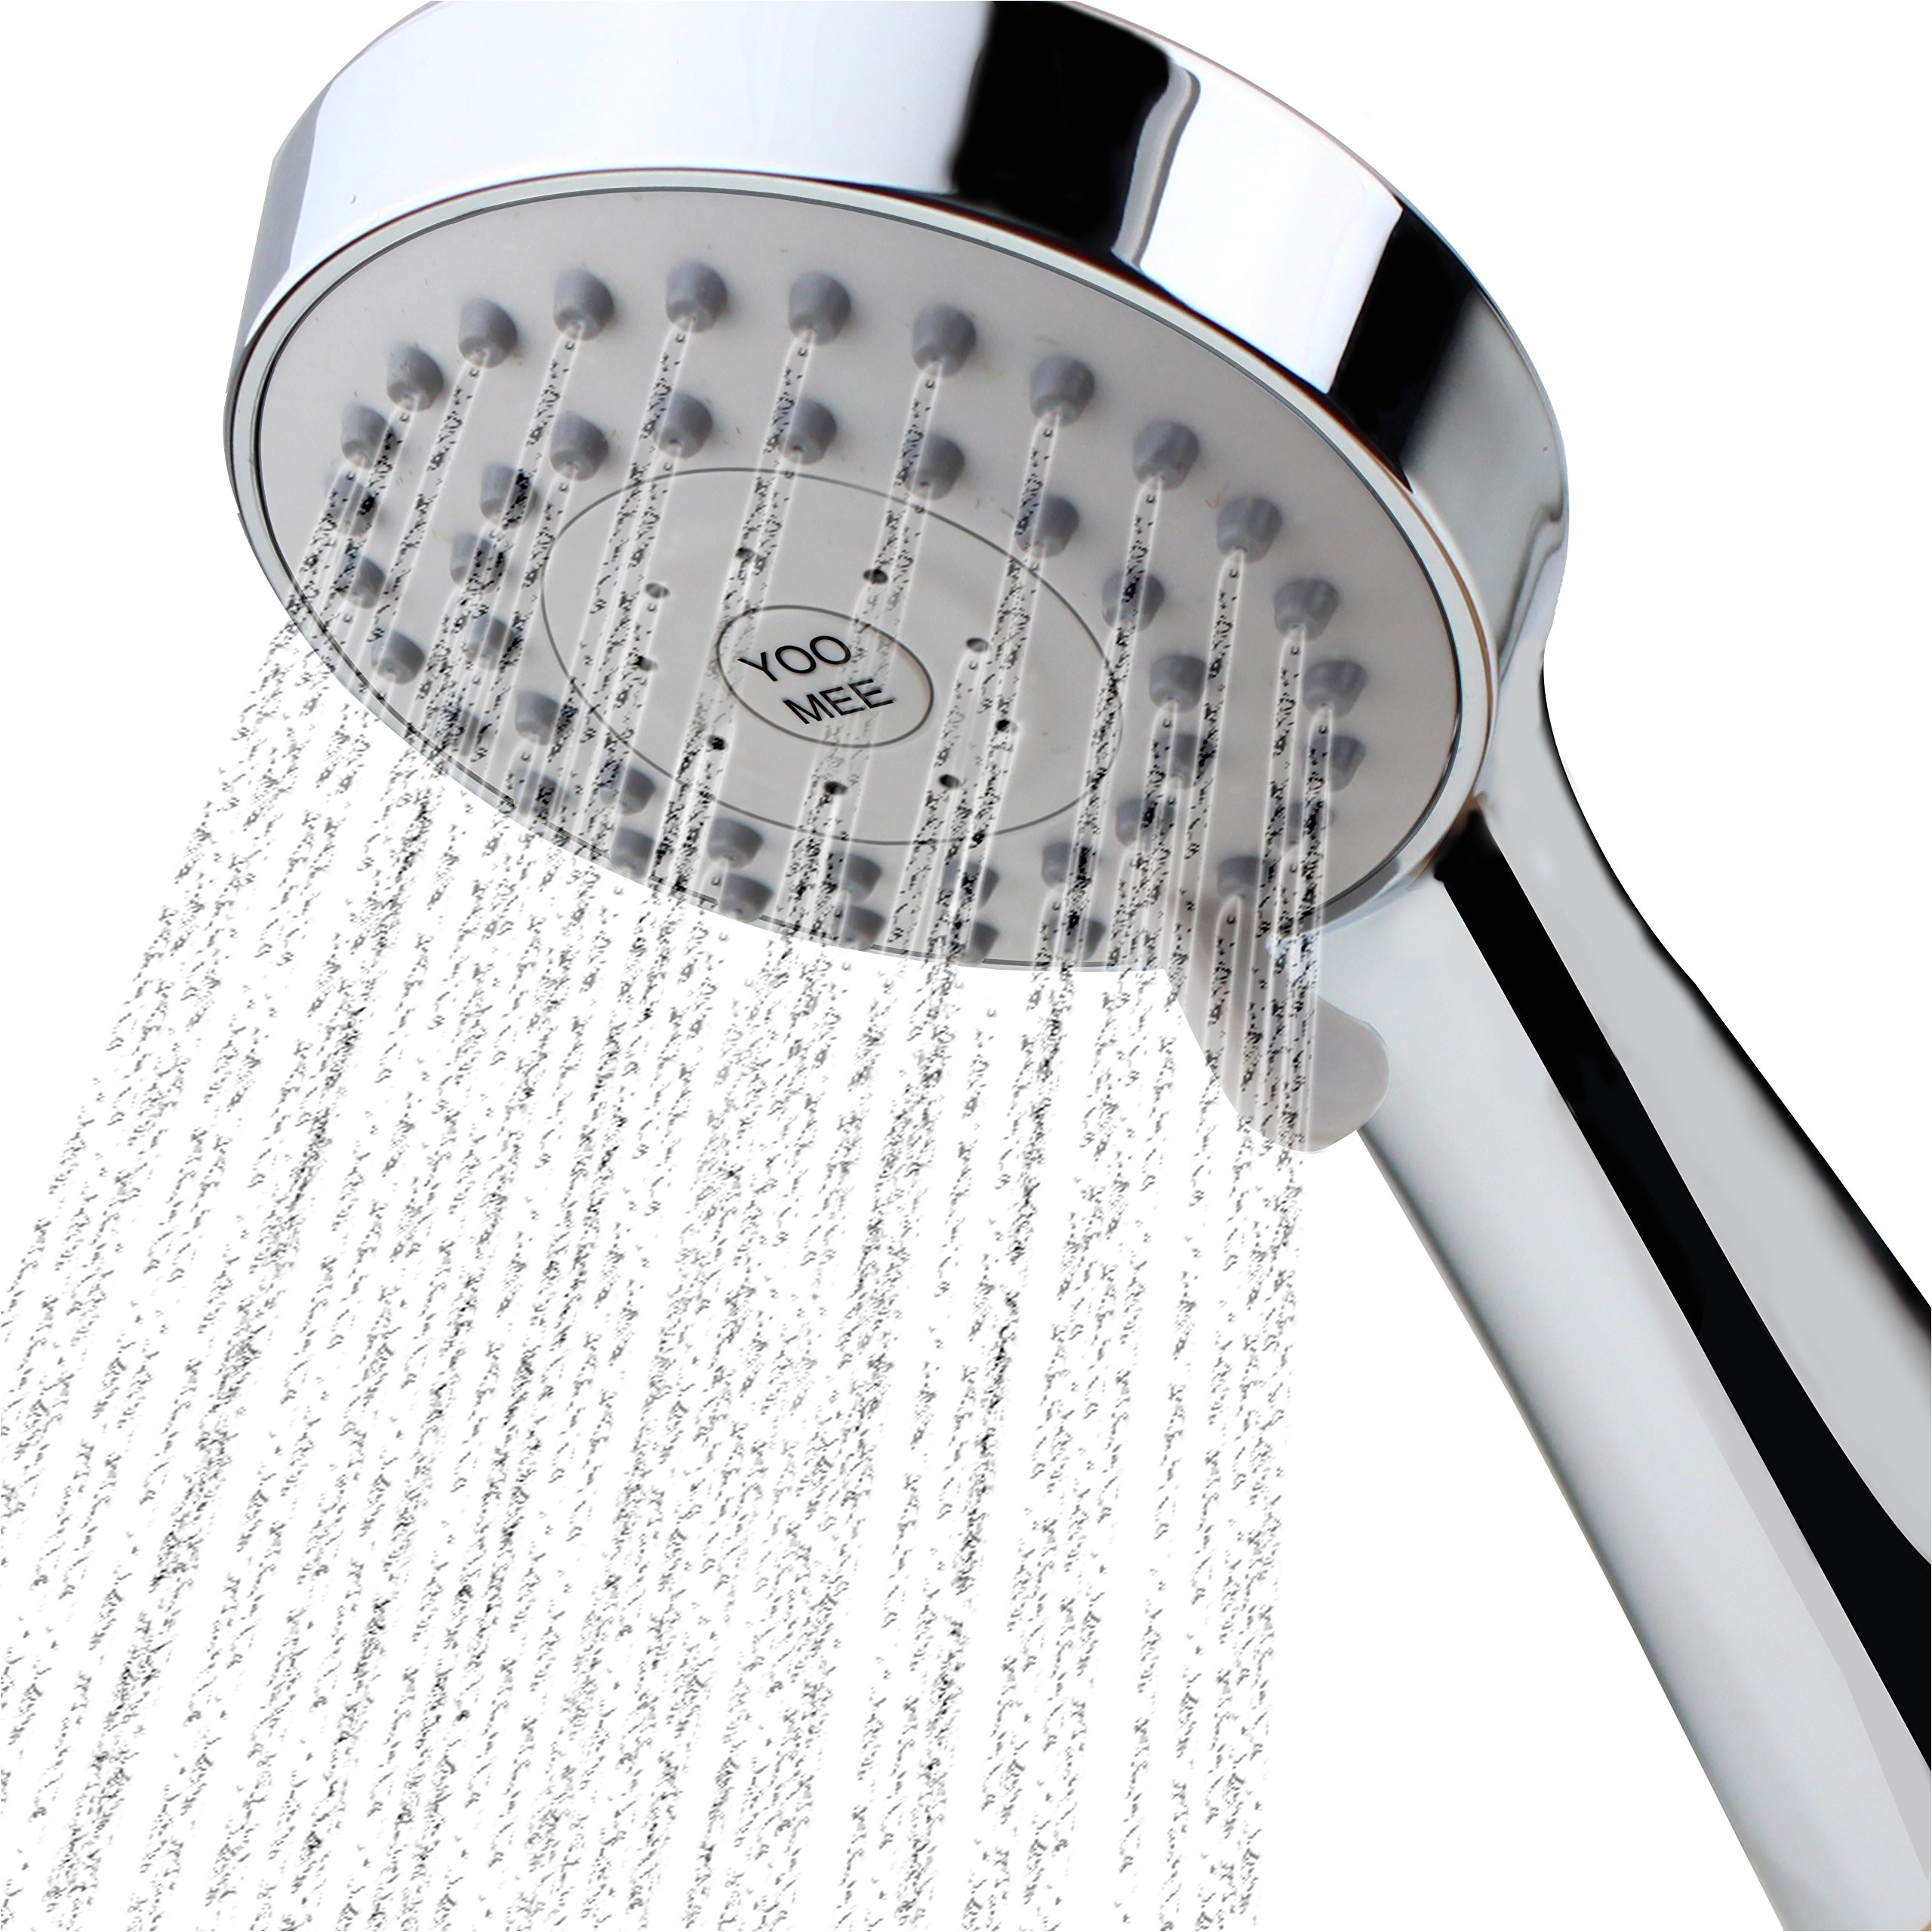 yoo mee high pressure handheld shower head with powerful shower spray against low pressure water